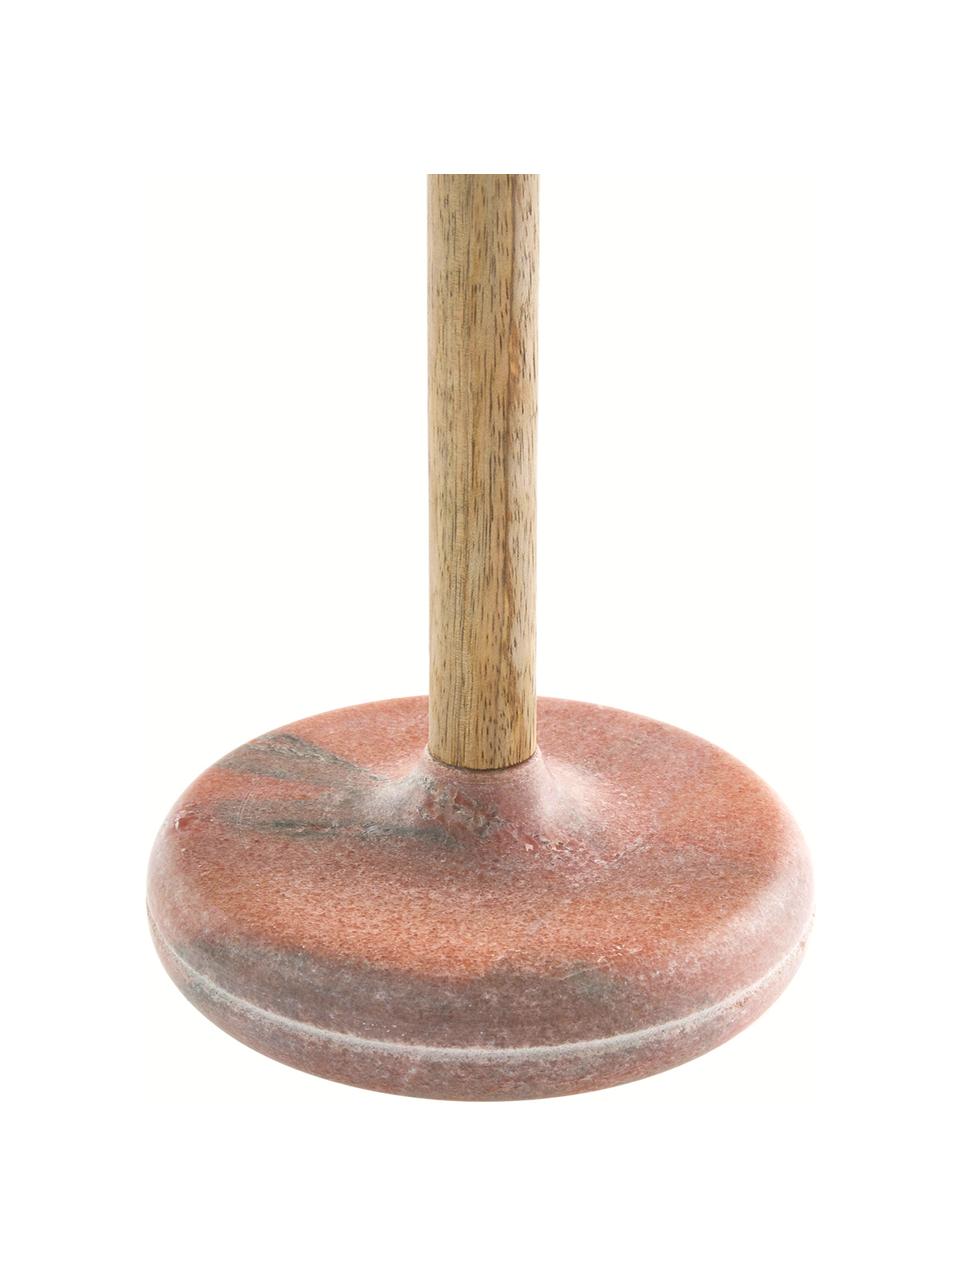 Marmor-Küchenrollenhalter Dyno, Stange: Holz, Sockel: Marmor, Holz, Rot marmoriert, Ø 15 x H 37 cm